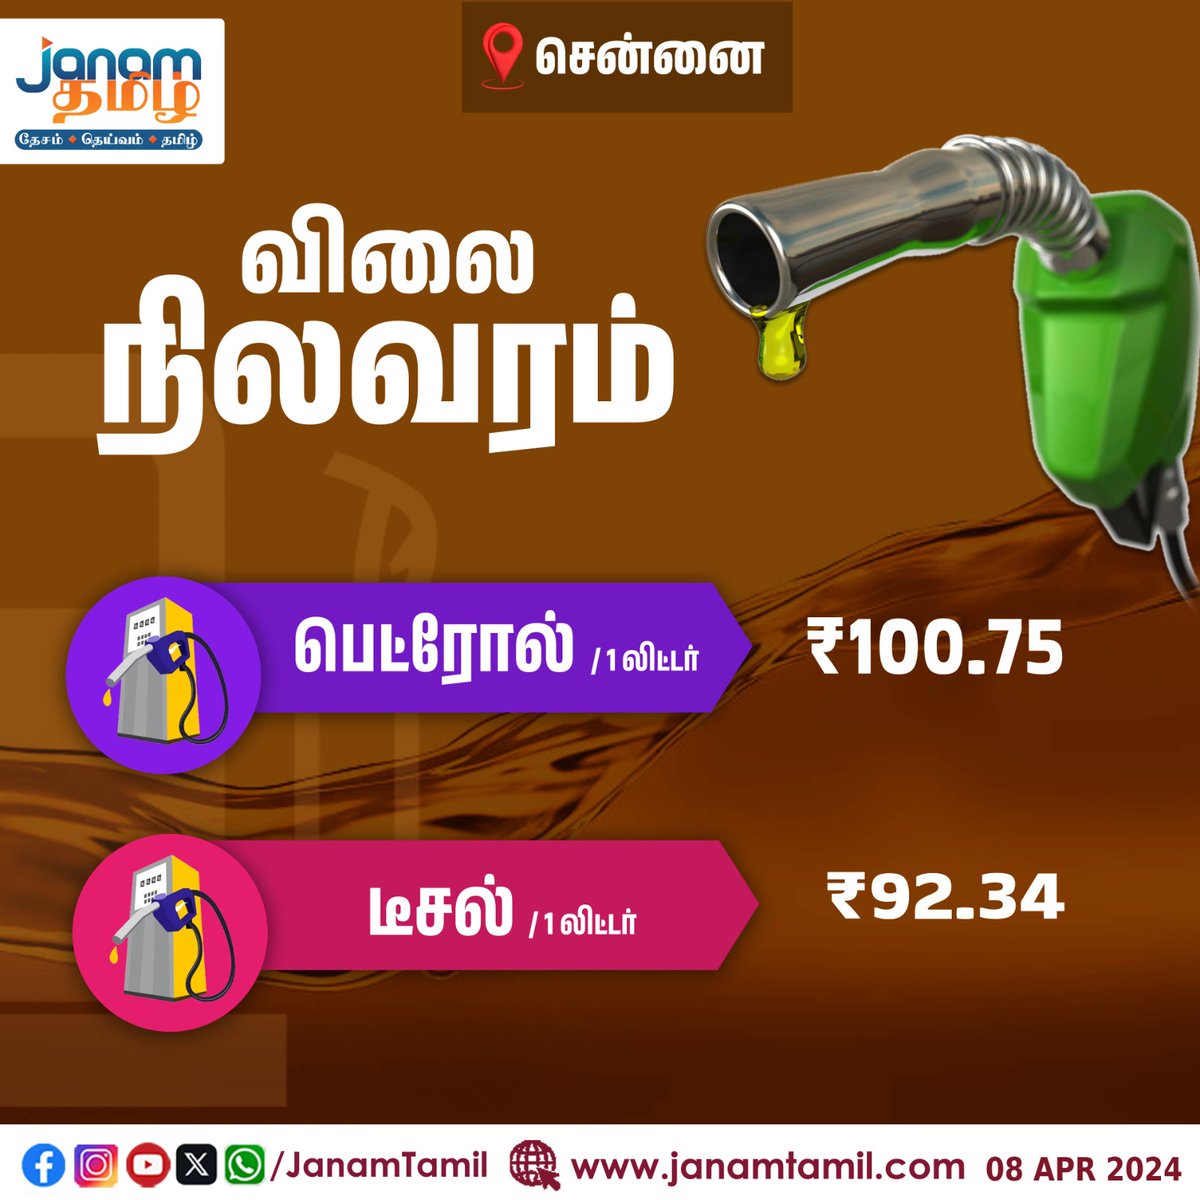 இன்றைய பெட்ரோல் விலை

#PetrolPrices #diesel #FuelPrice #TamilJanam